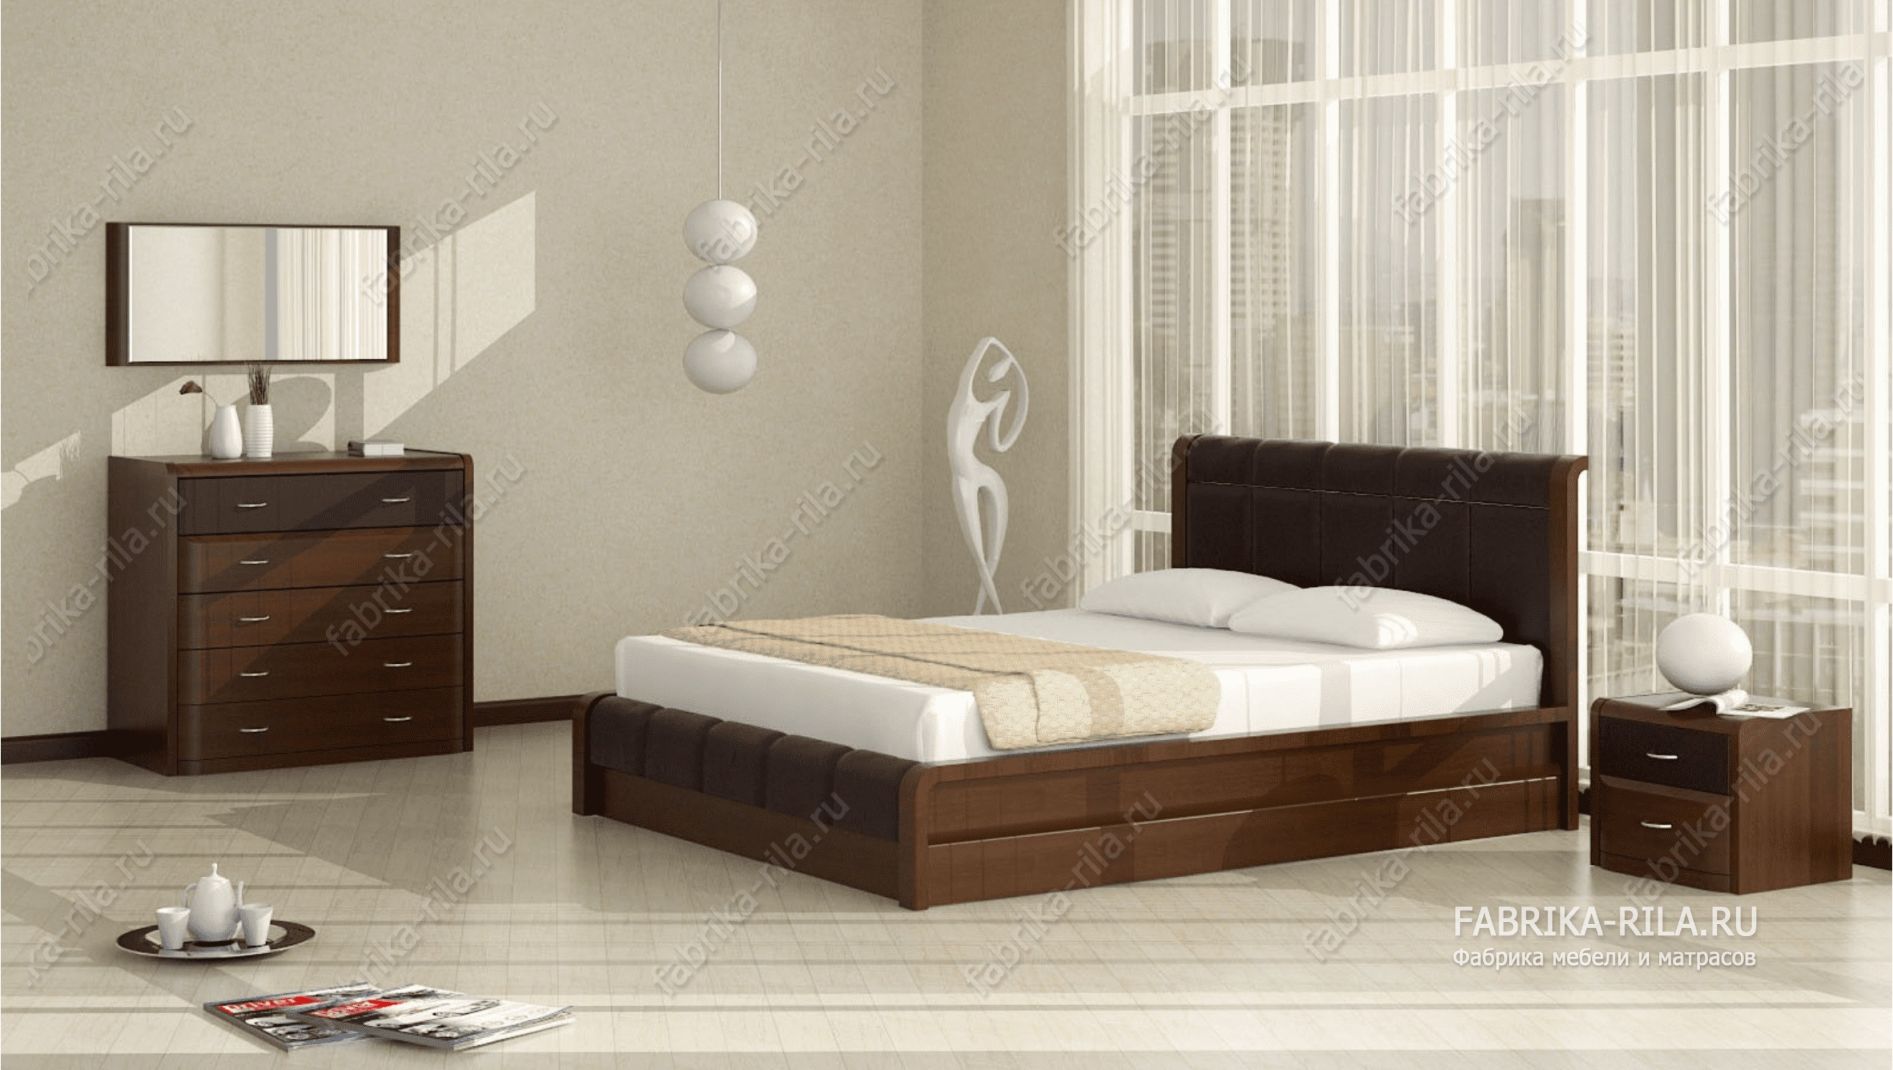 Кровать Arikama 2 — 160x190 см. из сосны